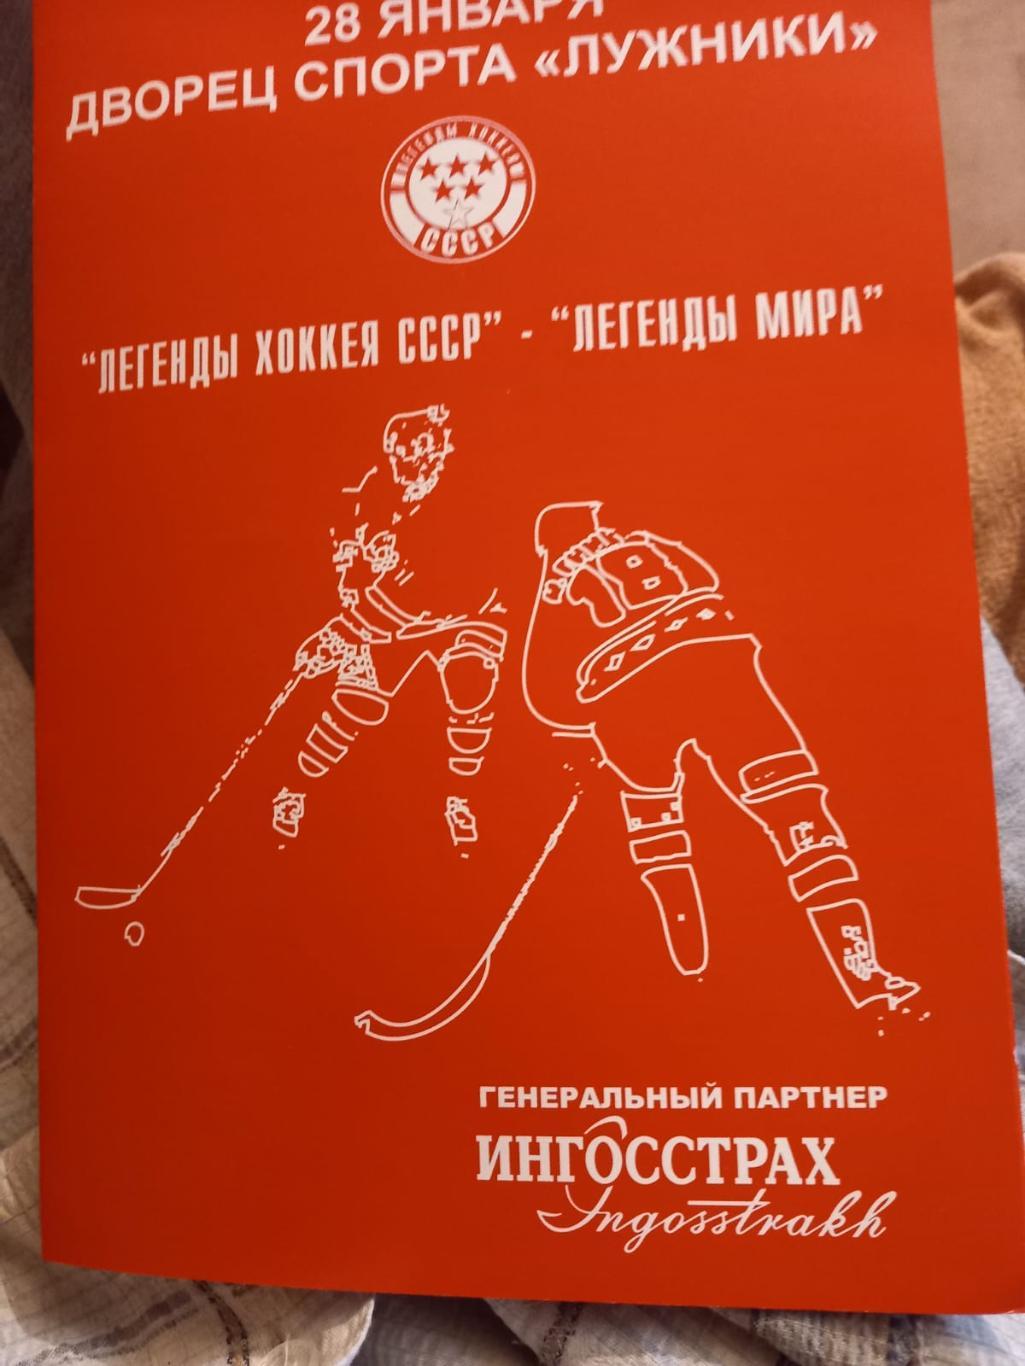 Легенды хоккея СССР - Легенды мира 28.01.2006